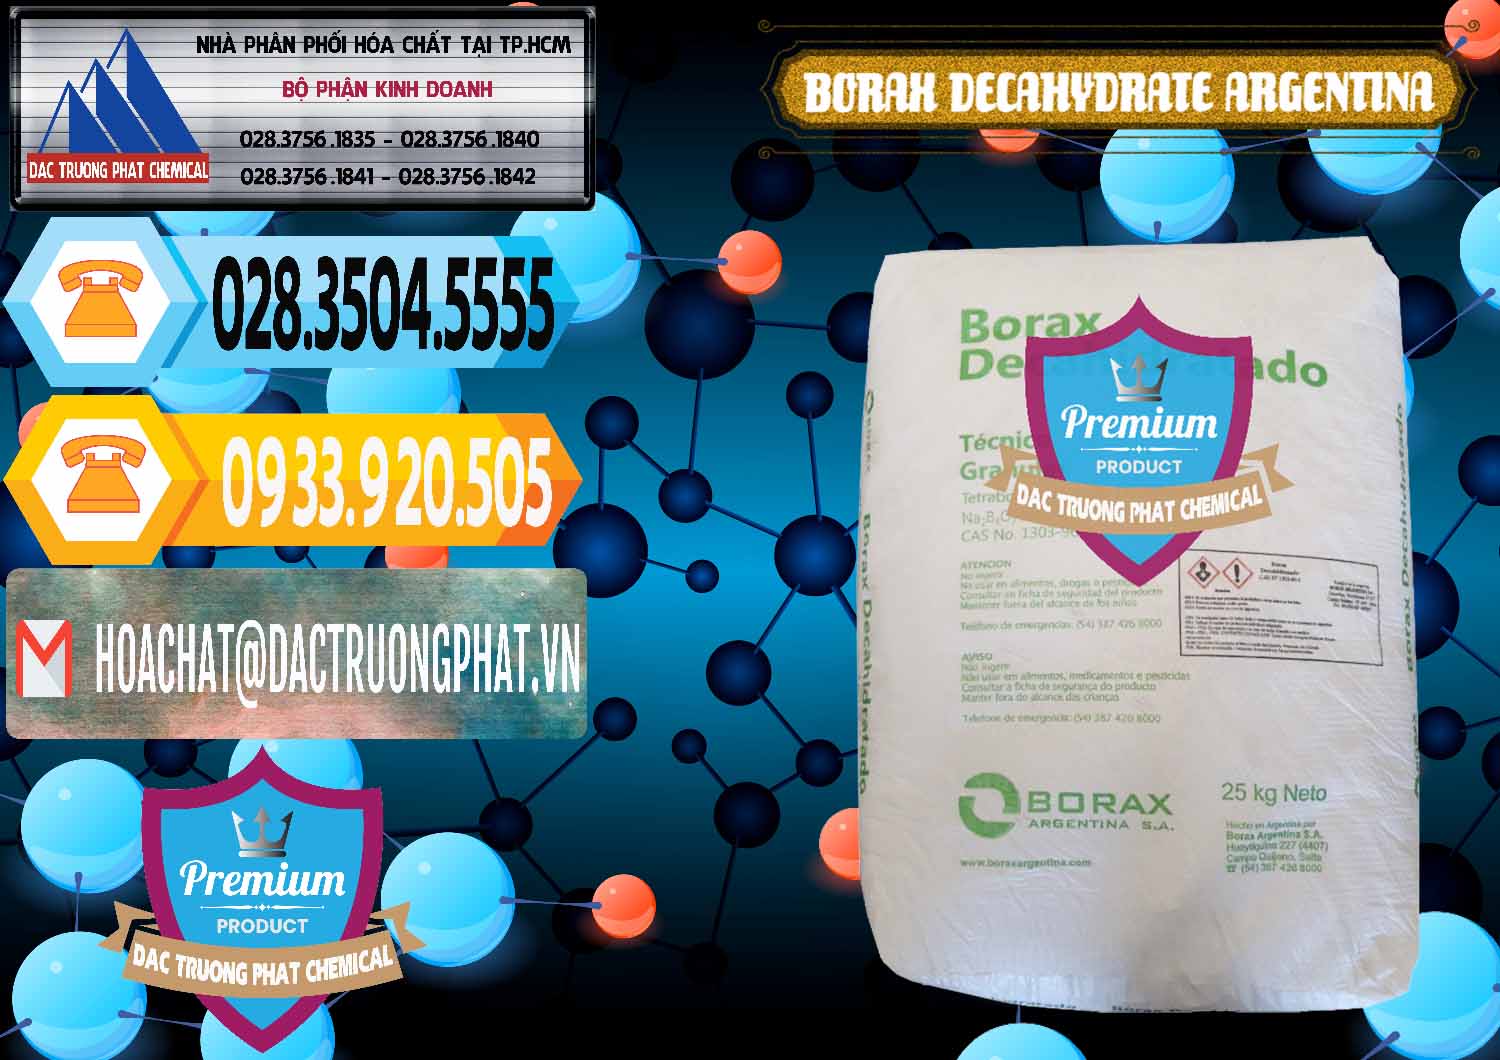 Nơi chuyên kinh doanh _ bán Borax Decahydrate Argentina - 0446 - Nhà cung ứng và phân phối hóa chất tại TP.HCM - hoachattayrua.net